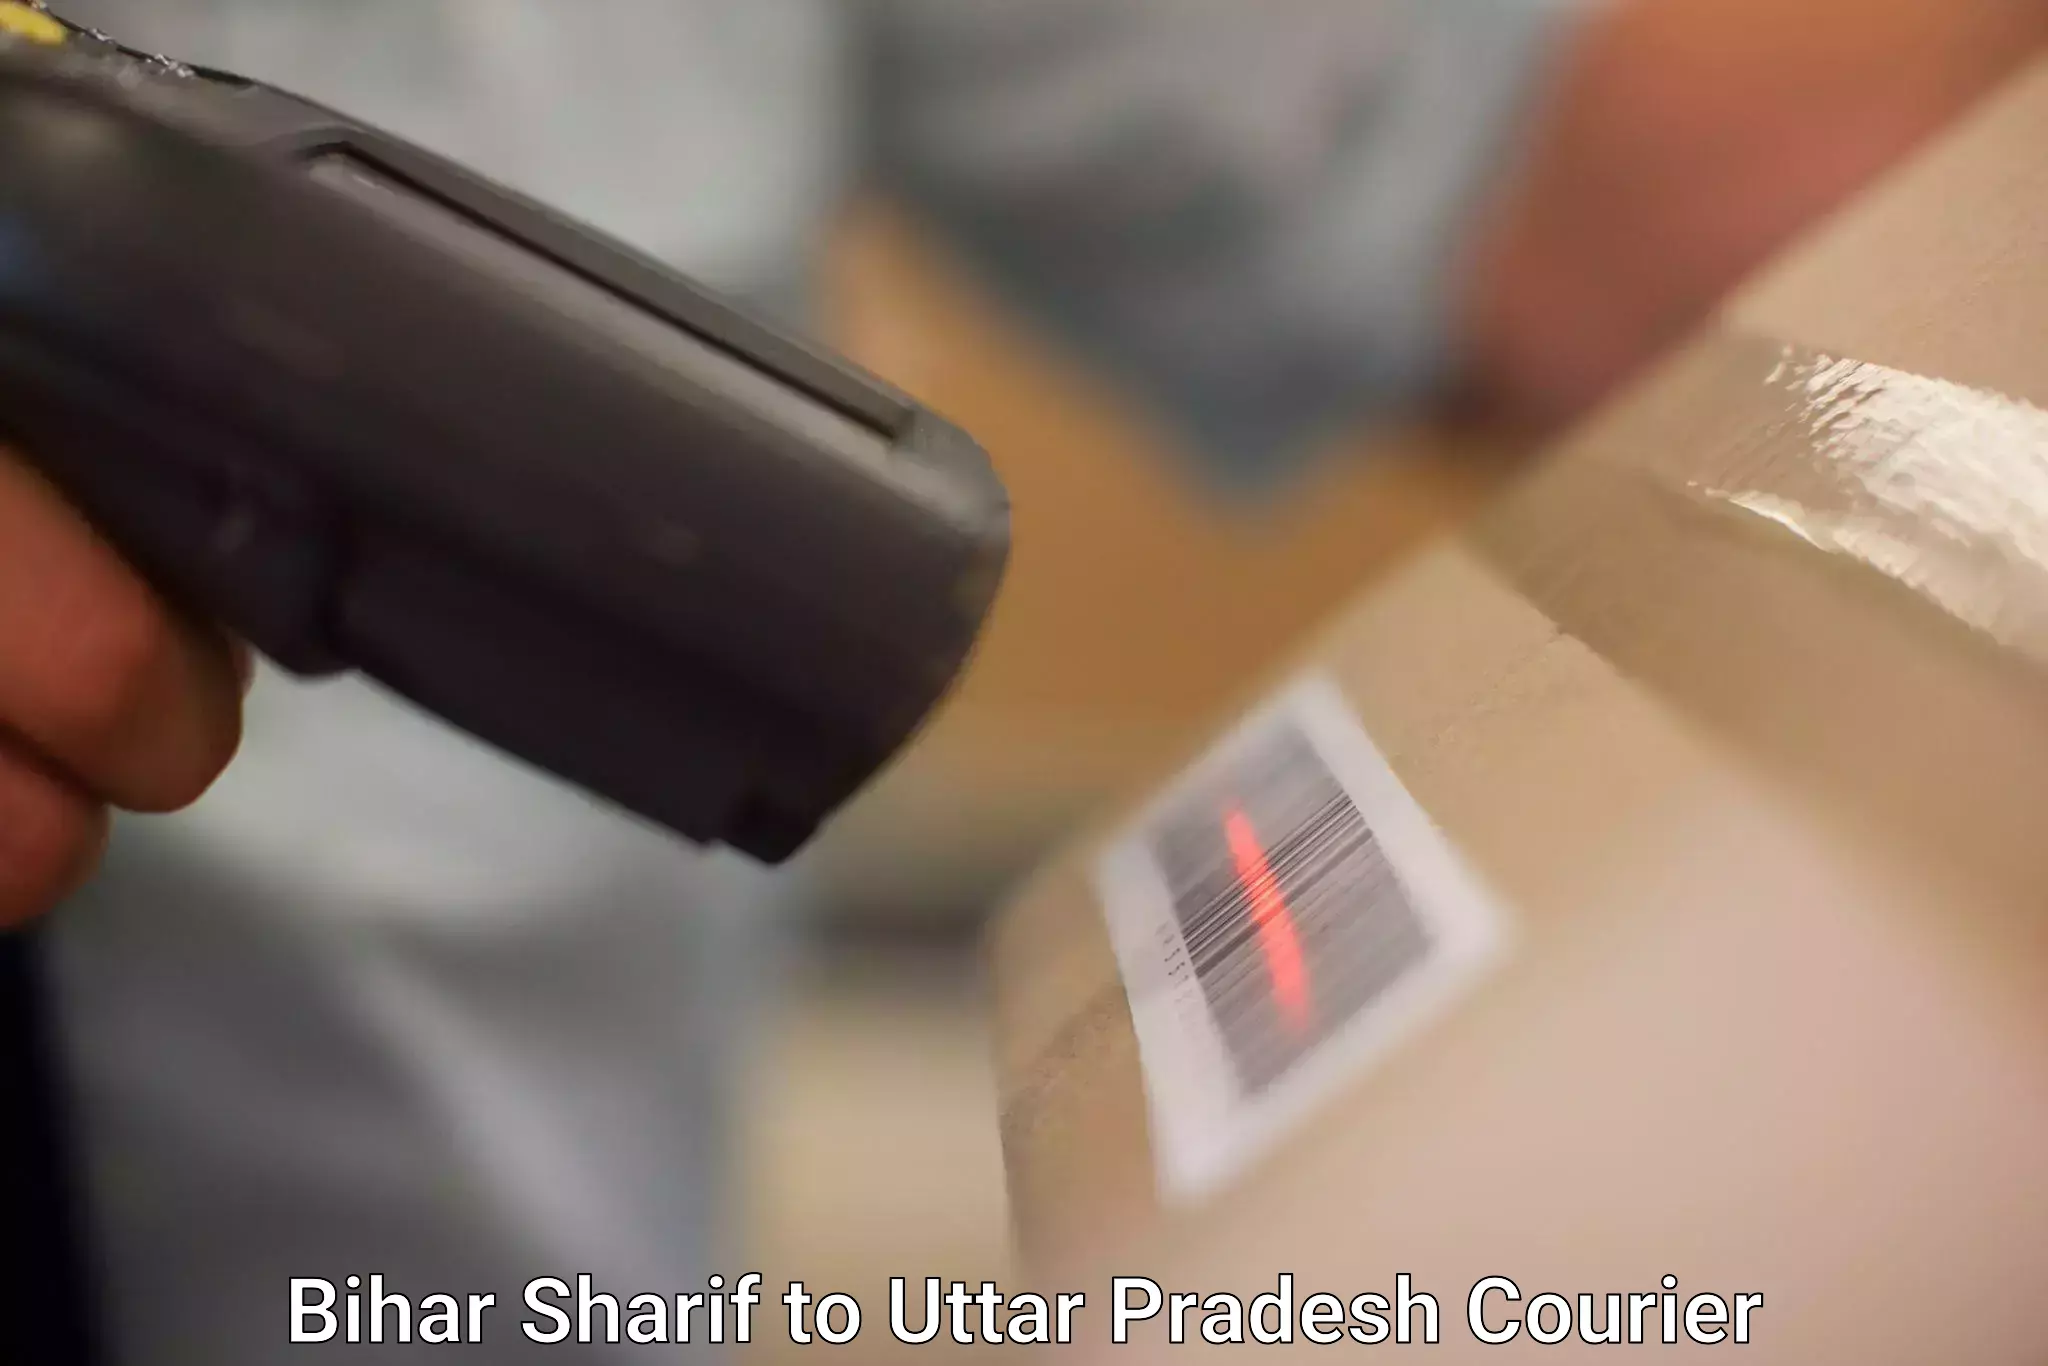 Express courier facilities Bihar Sharif to Kaptanganj